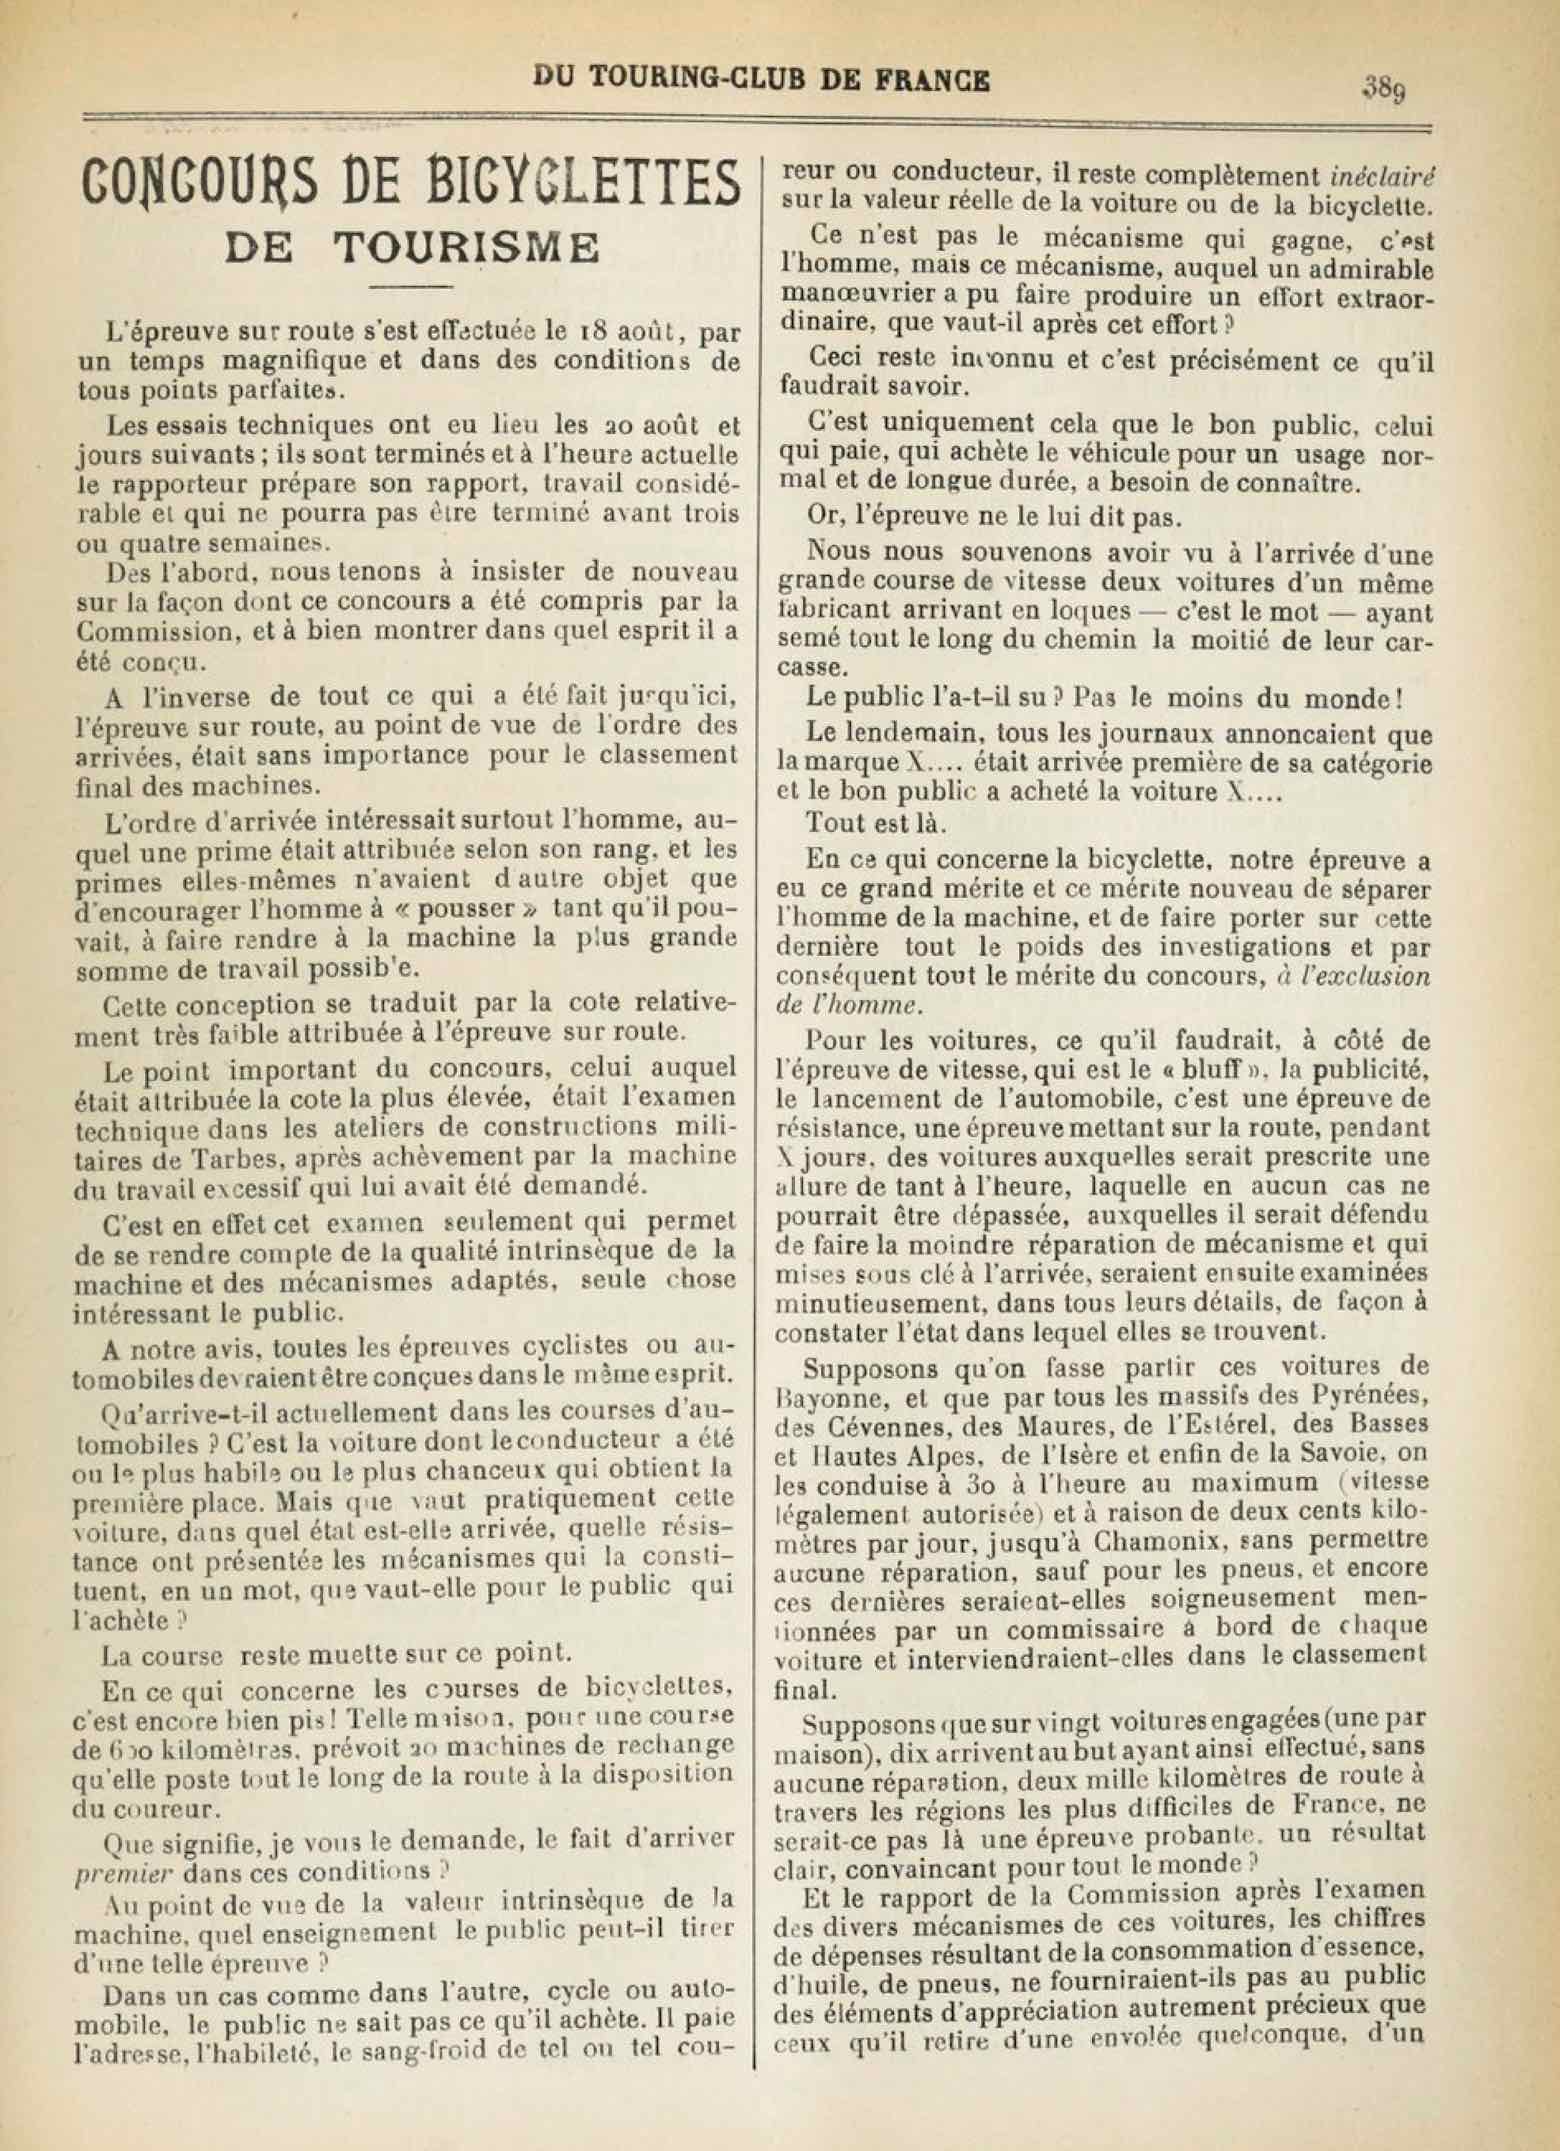 T.C.F. Revue Mensuelle September 1902 - Concours de Bicyclettes de Tourisme (part III) scan 1 main image